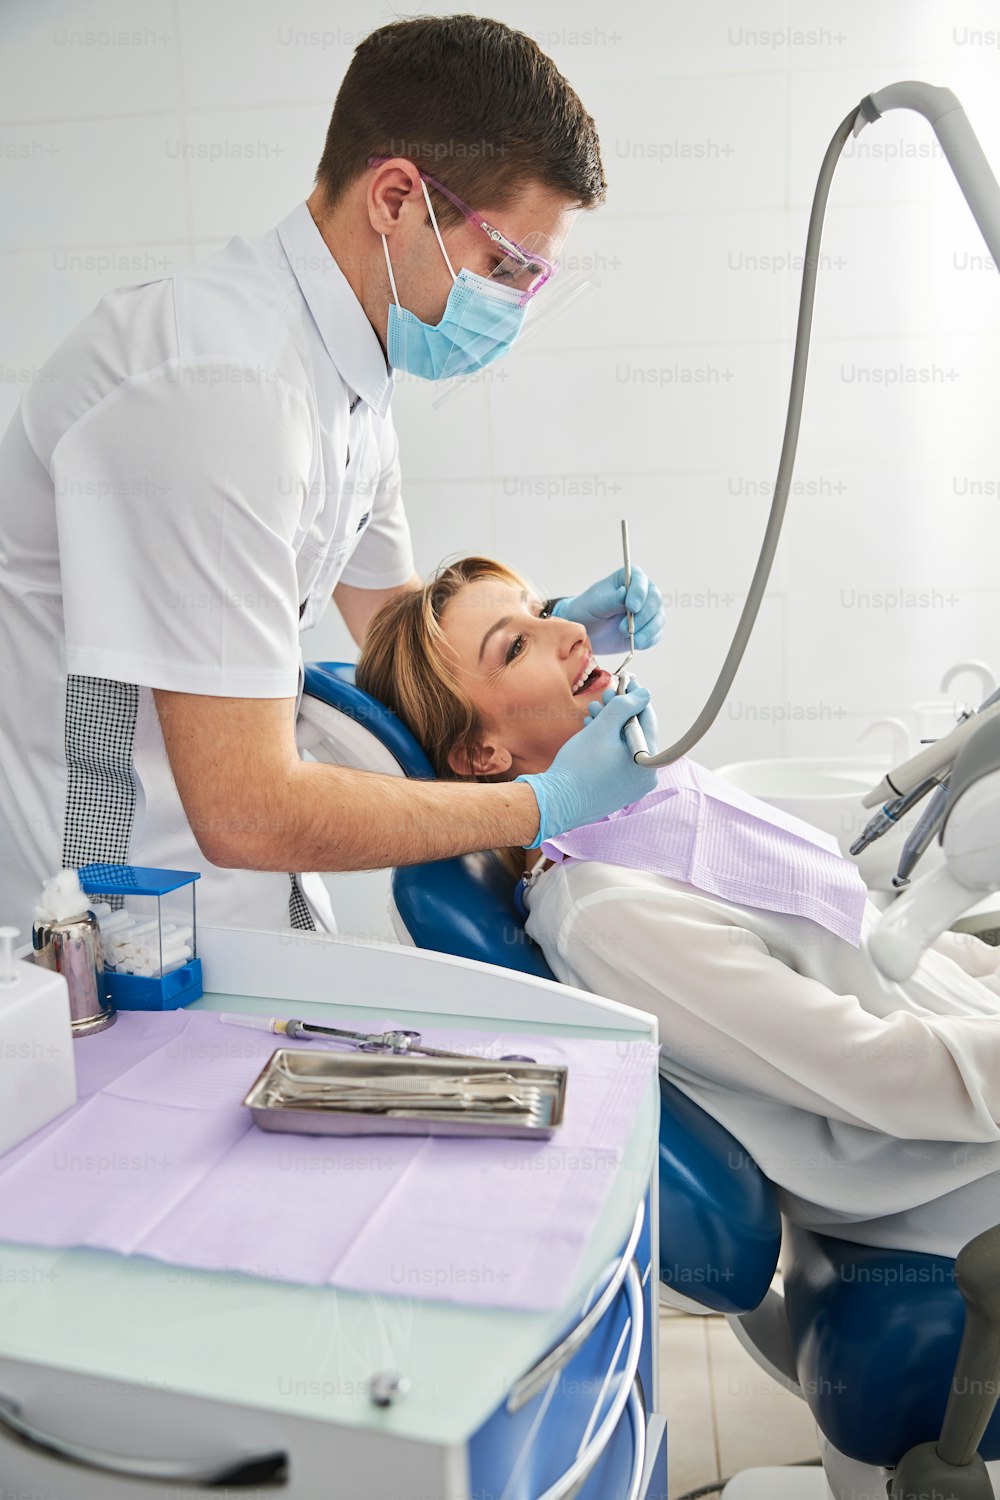 Dentista em uma máscara facial tratando os dentes de uma mulher em operação usando ferramentas dentárias